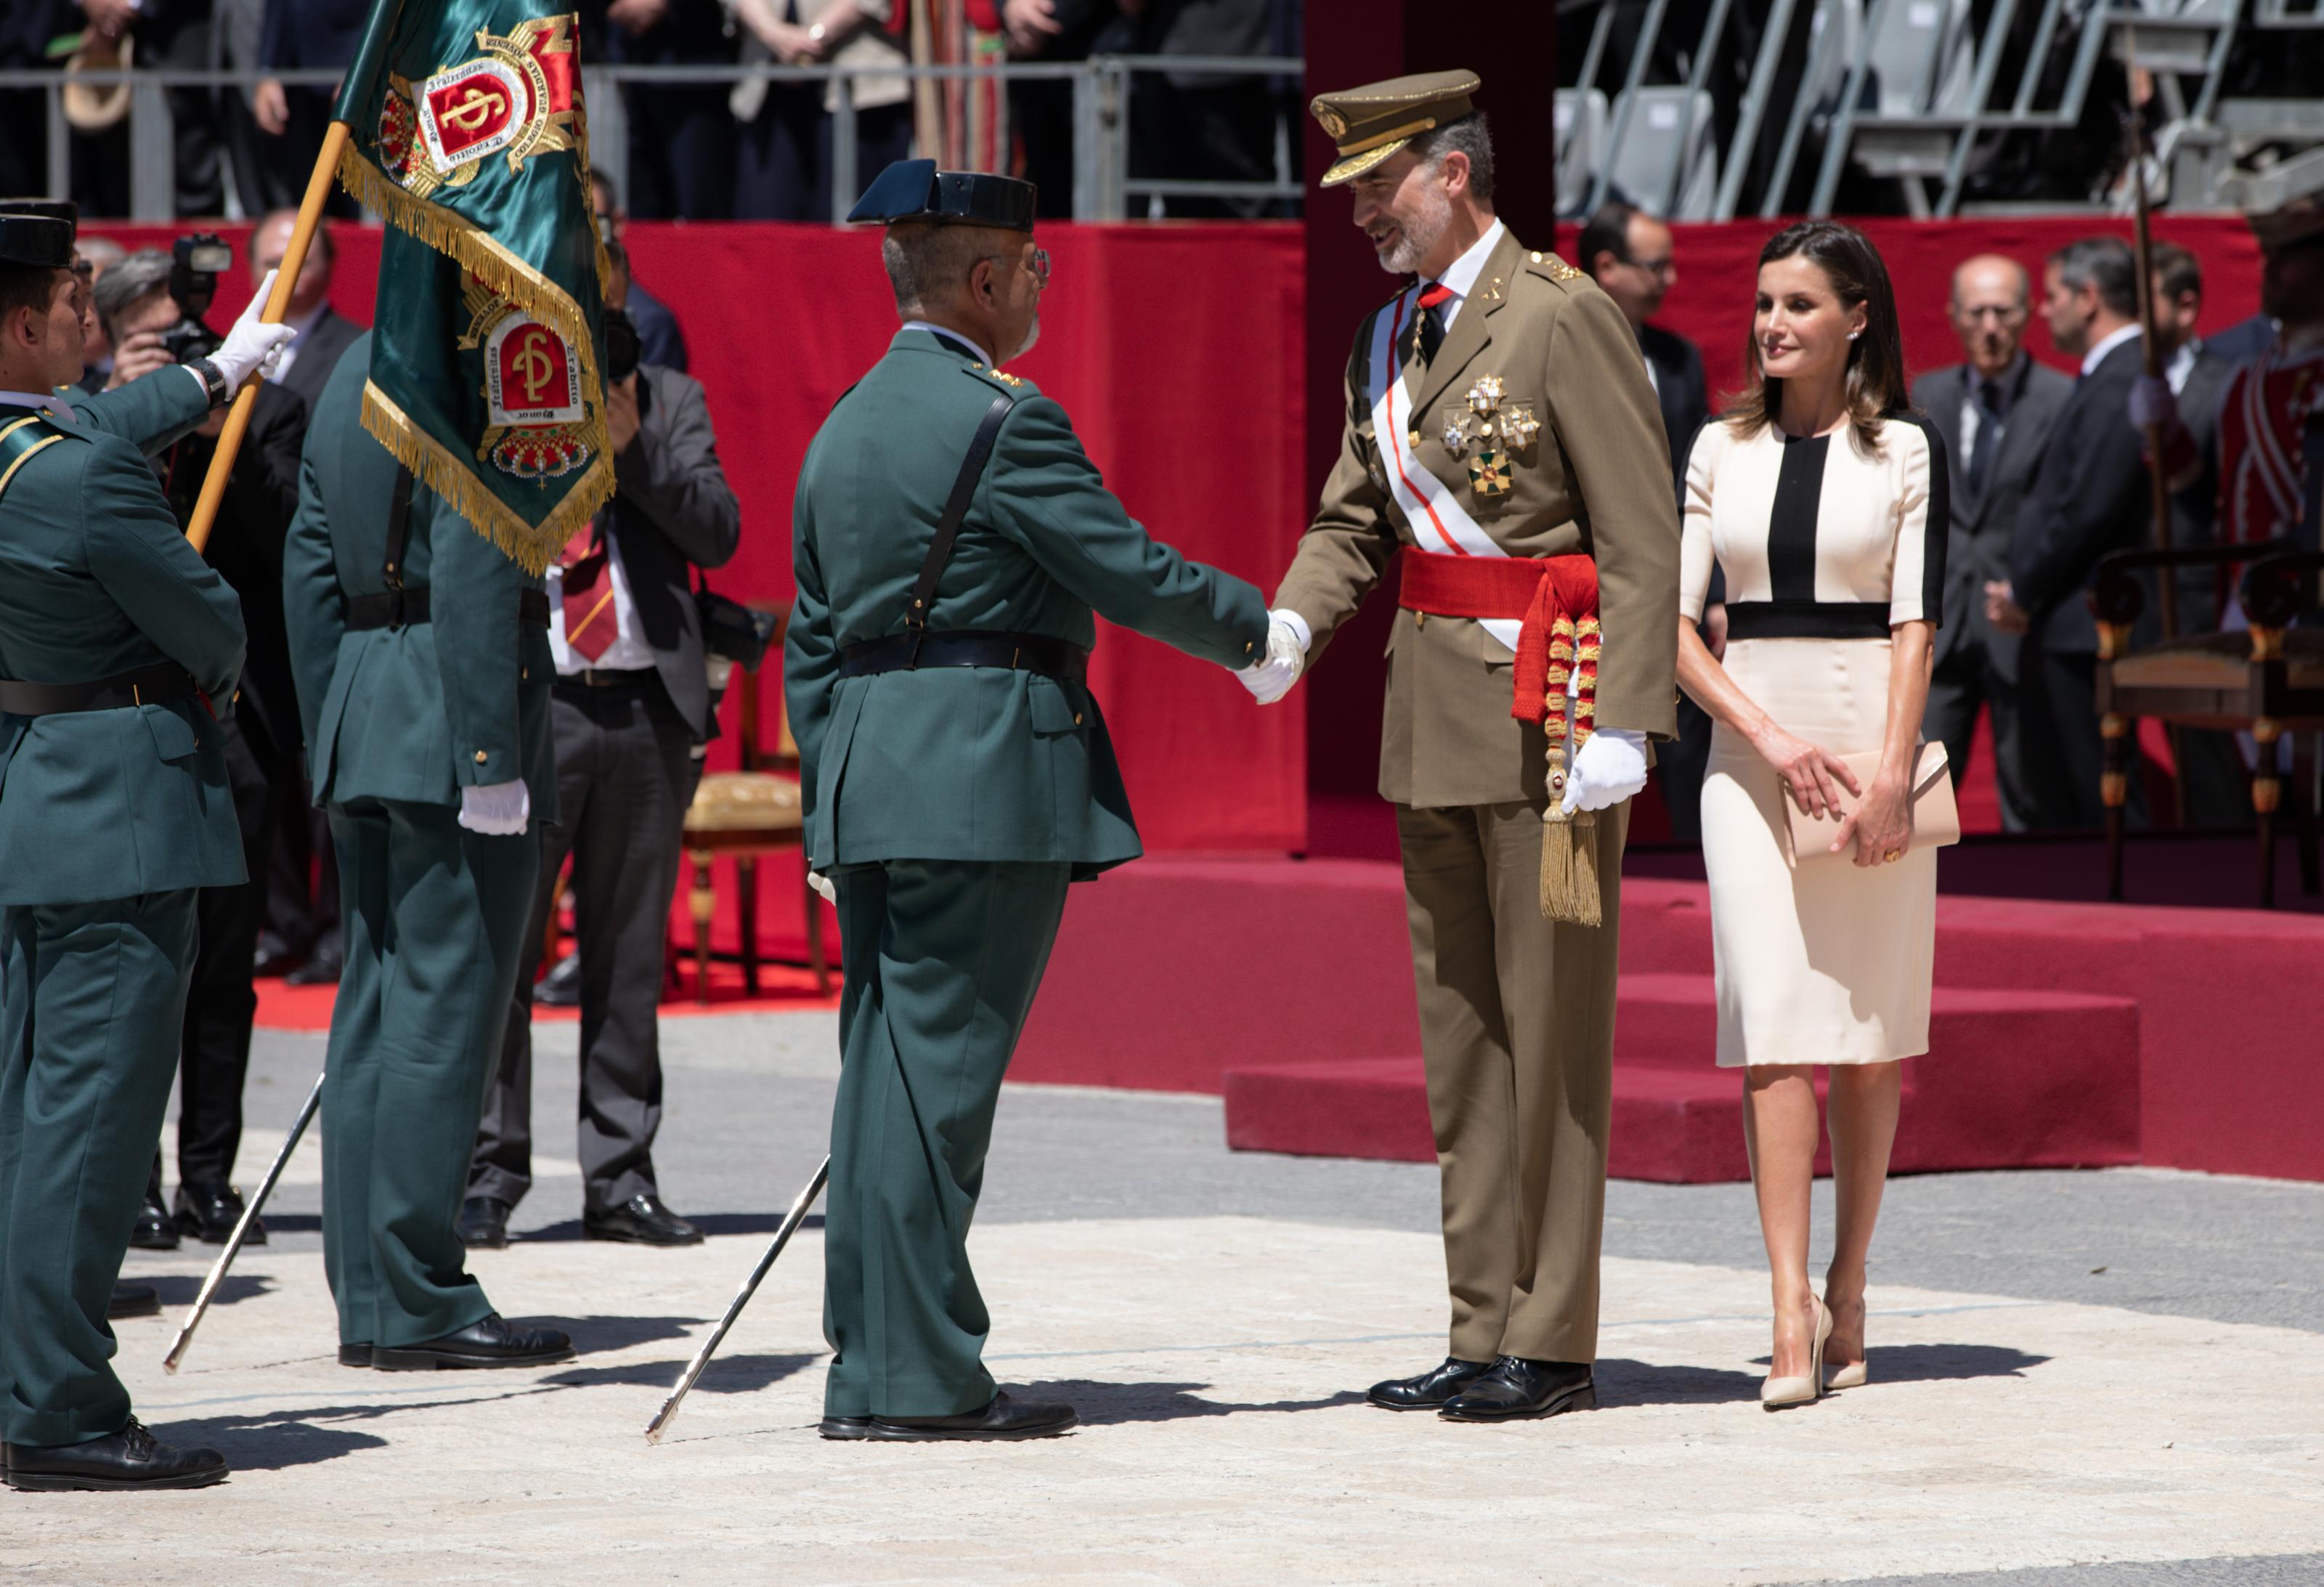 El Rey Felipe VI saluda a un agente de la Guardia Civil durante el central conmemorativo del 175 aniversario de la fundación de la Guardia Civil en el Palacio Real. Europa Press